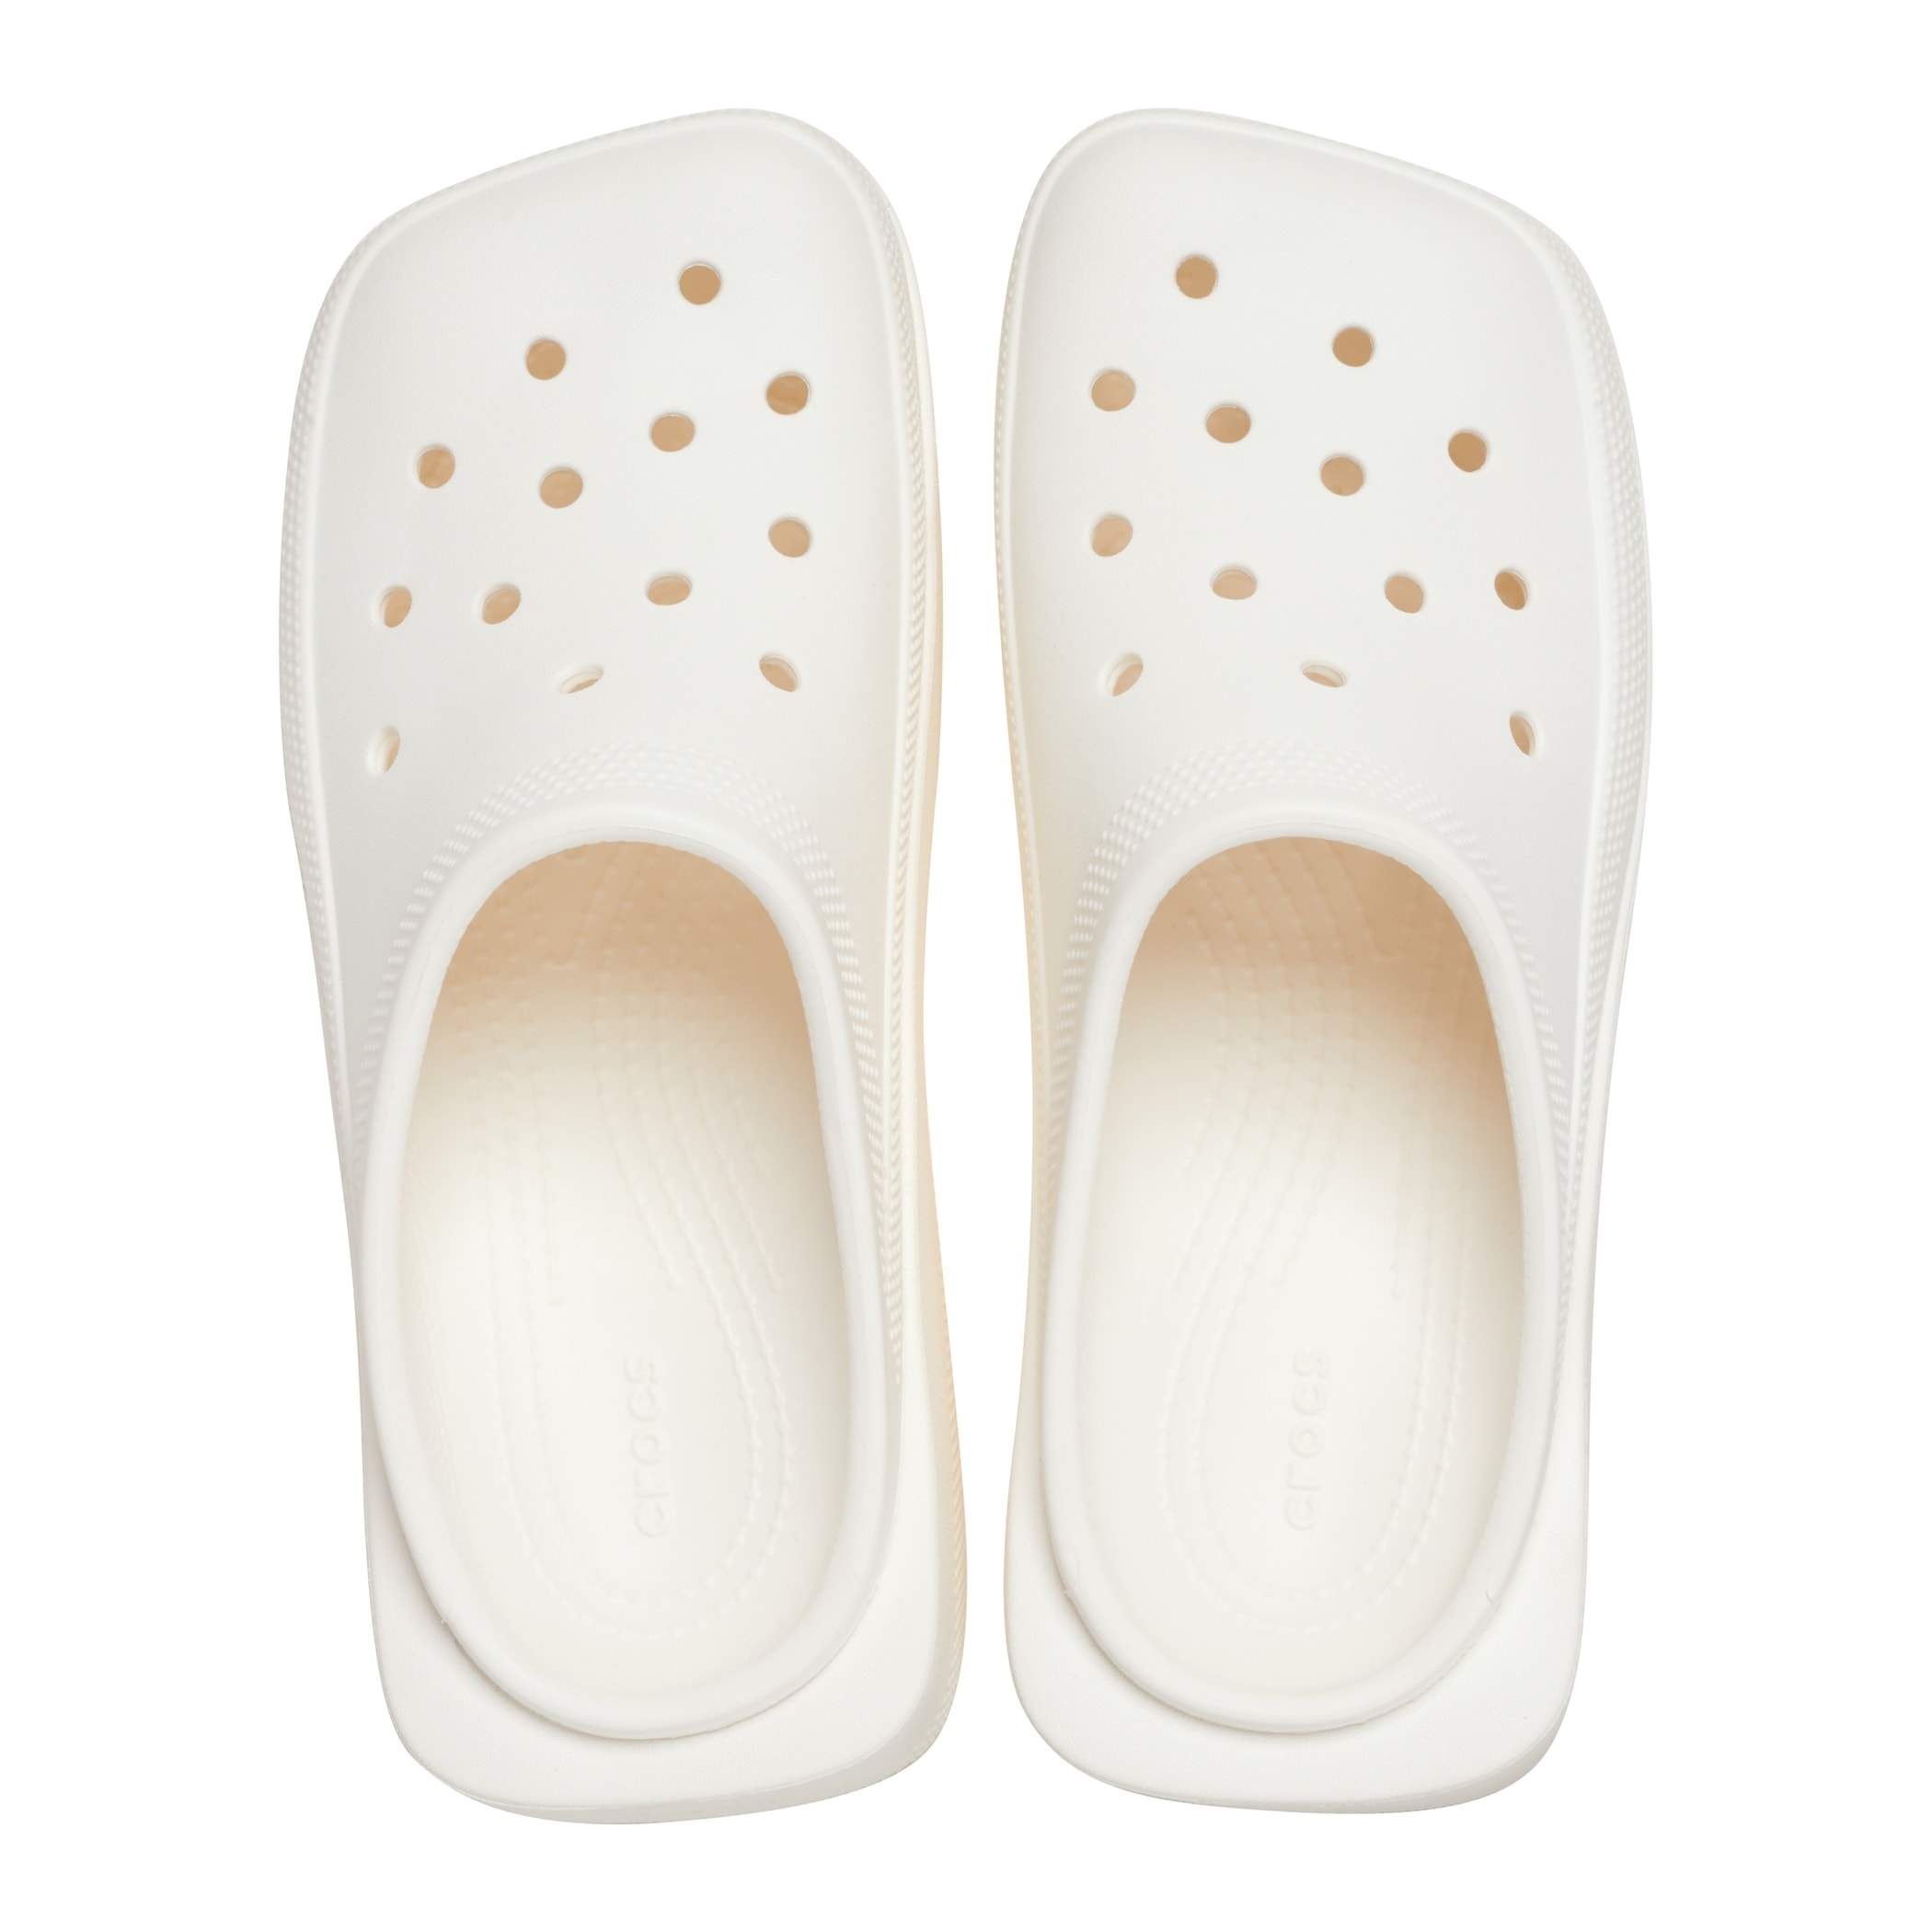 Crocs 推出全新 Blunt Toe 方头扑克鞋